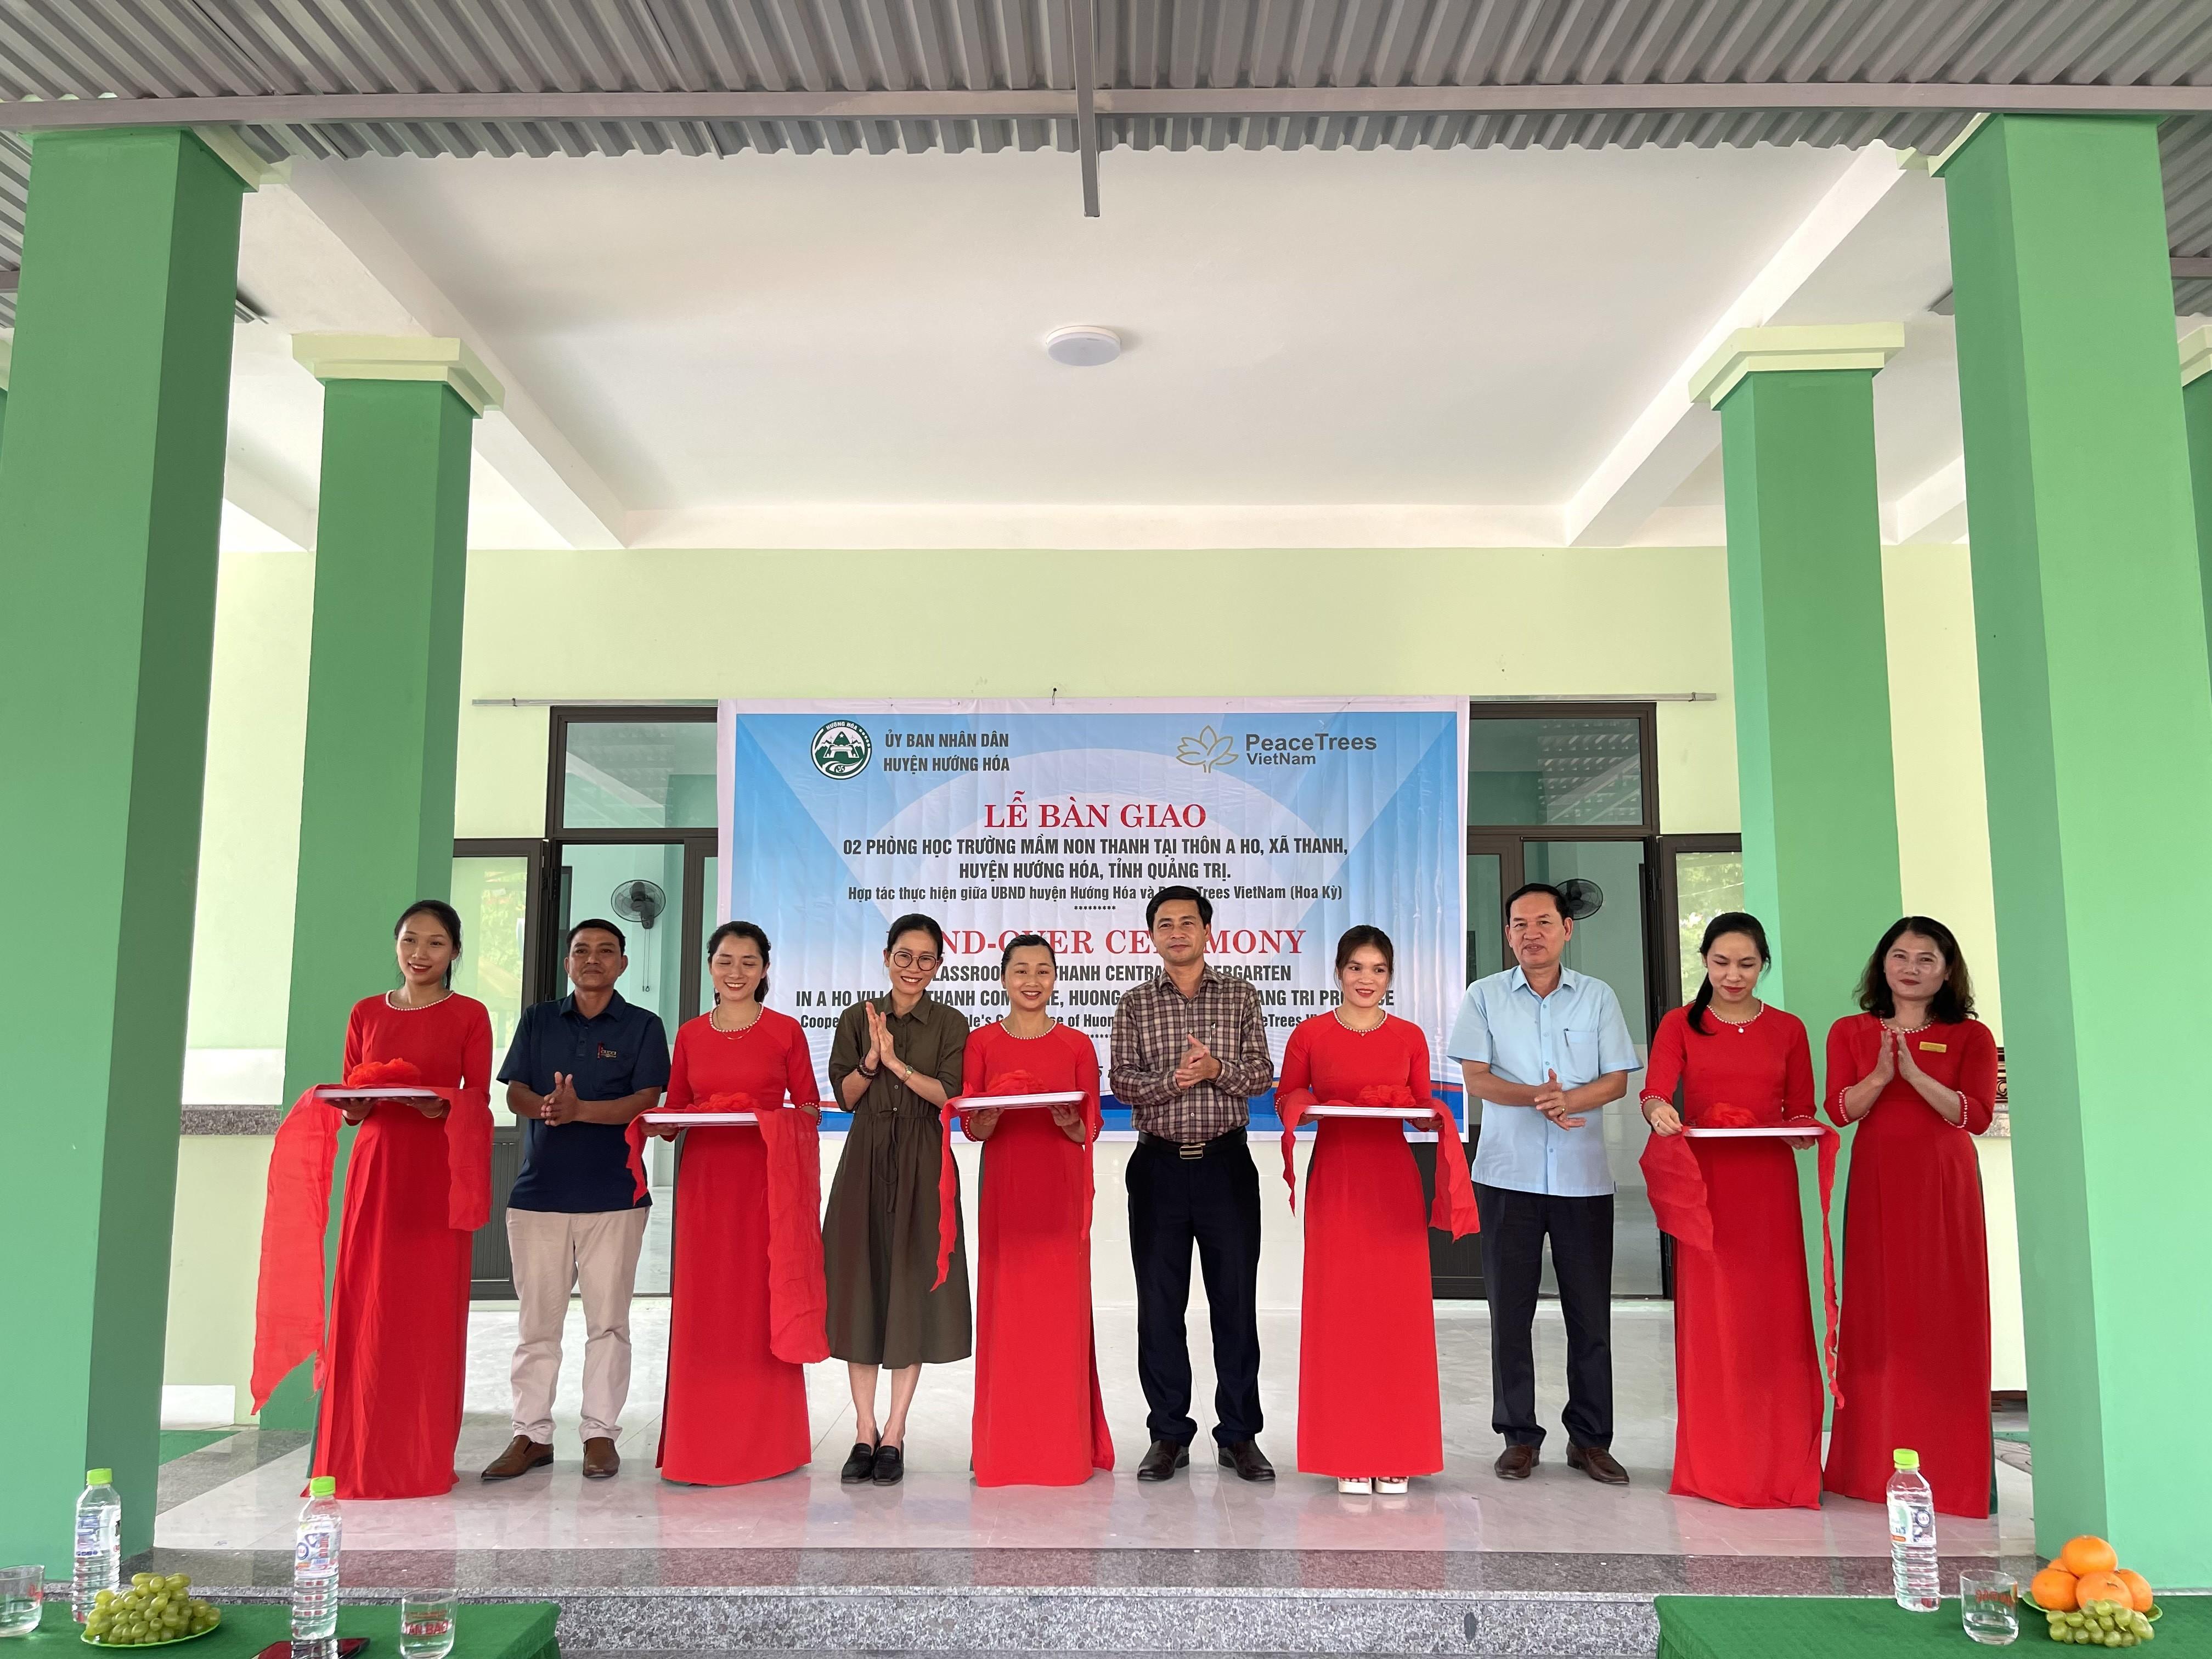 Hướng Hóa: Bàn giao 2 phòng học Trường Mầm non trung tâm xã Thanh